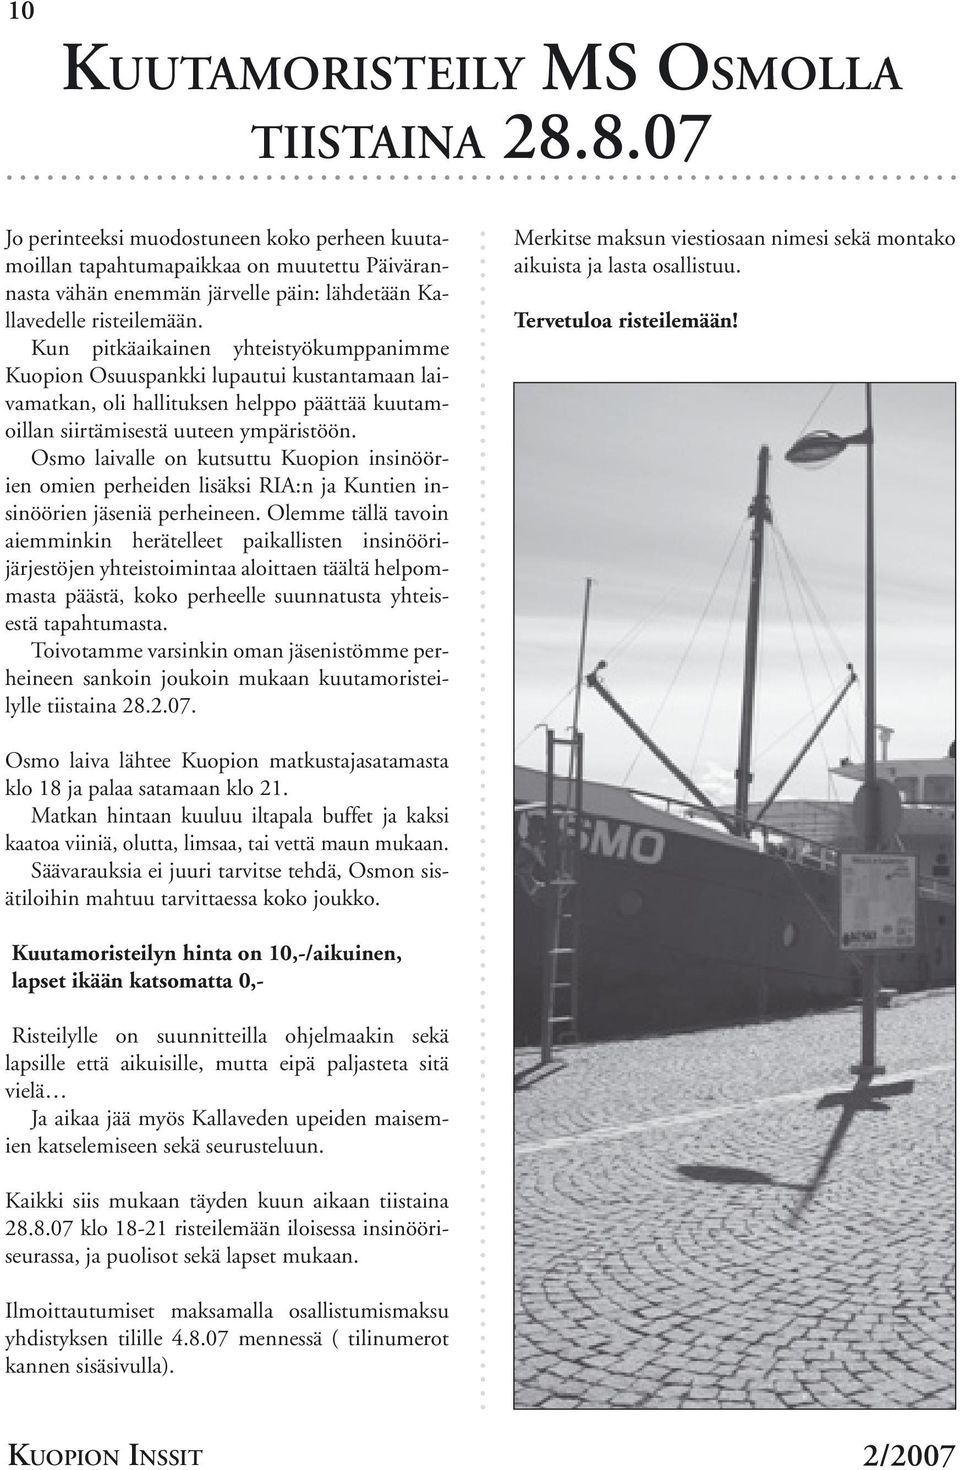 Kun pitkäaikainen yhteistyökumppanimme Kuopion Osuuspankki lupautui kustantamaan laivamatkan, oli hallituksen helppo päättää kuutamoillan siirtämisestä uuteen ympäristöön.